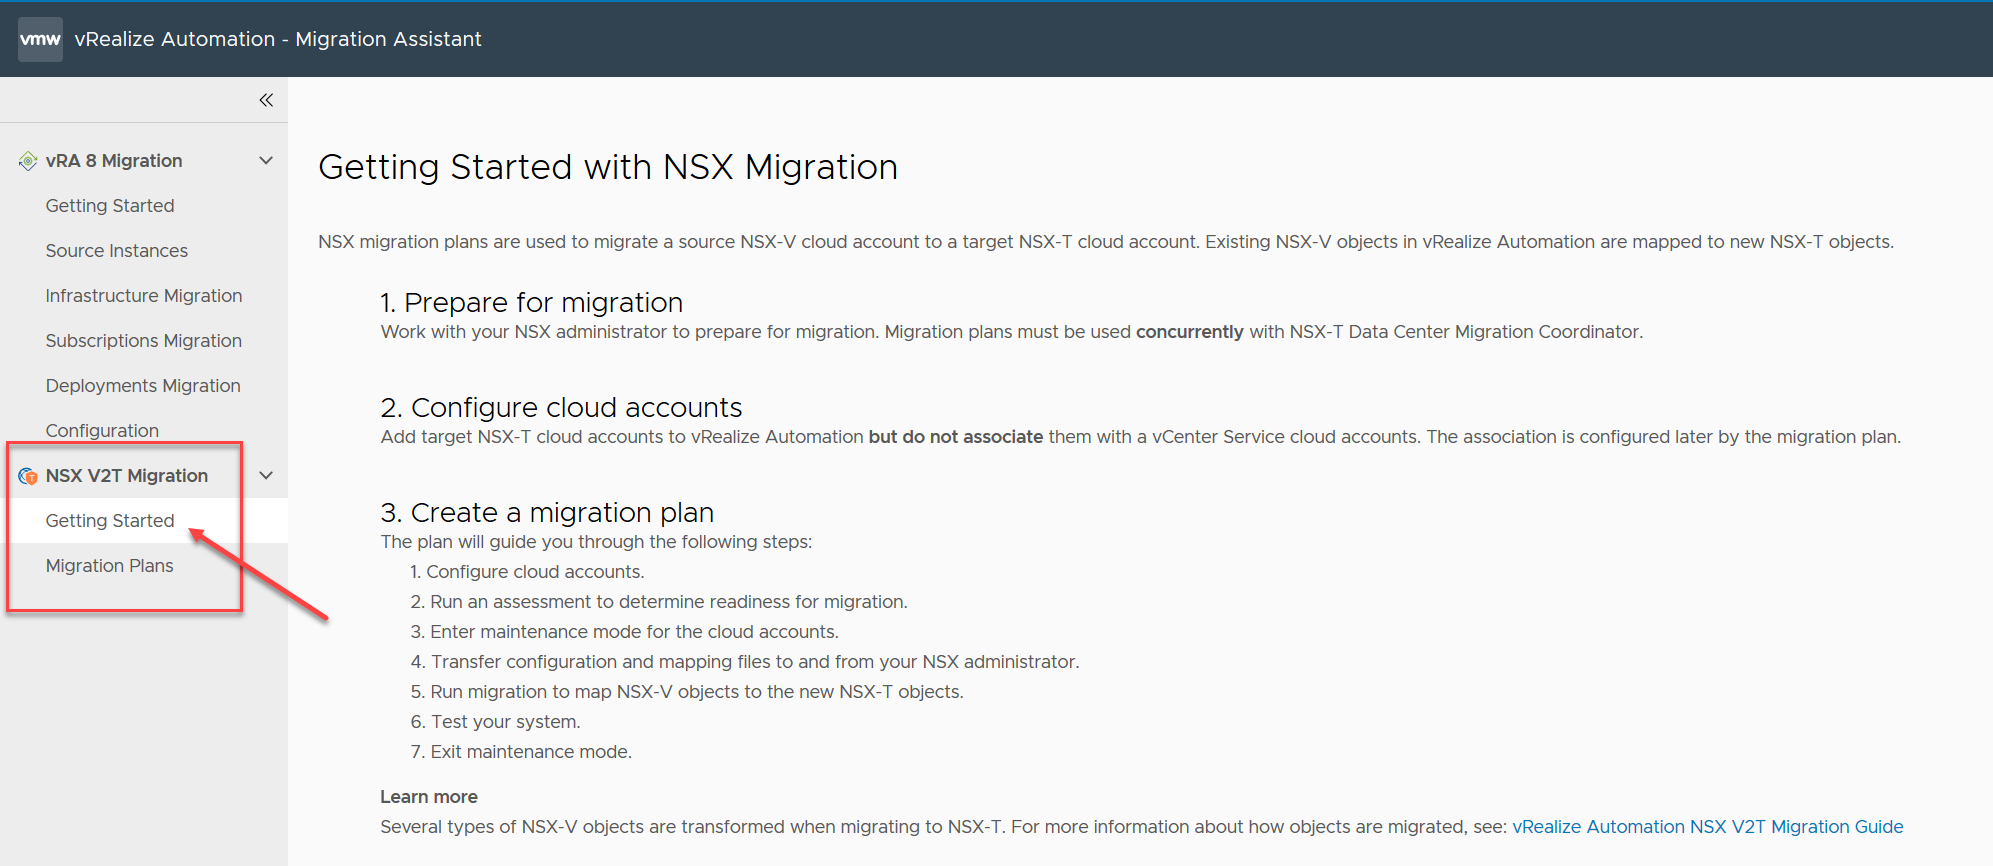 Capture d'écran de la page d'accueil de vRealize Automation dans laquelle l'onglet Services et la vignette de l'assistant de migration vRA sont mis en évidence.